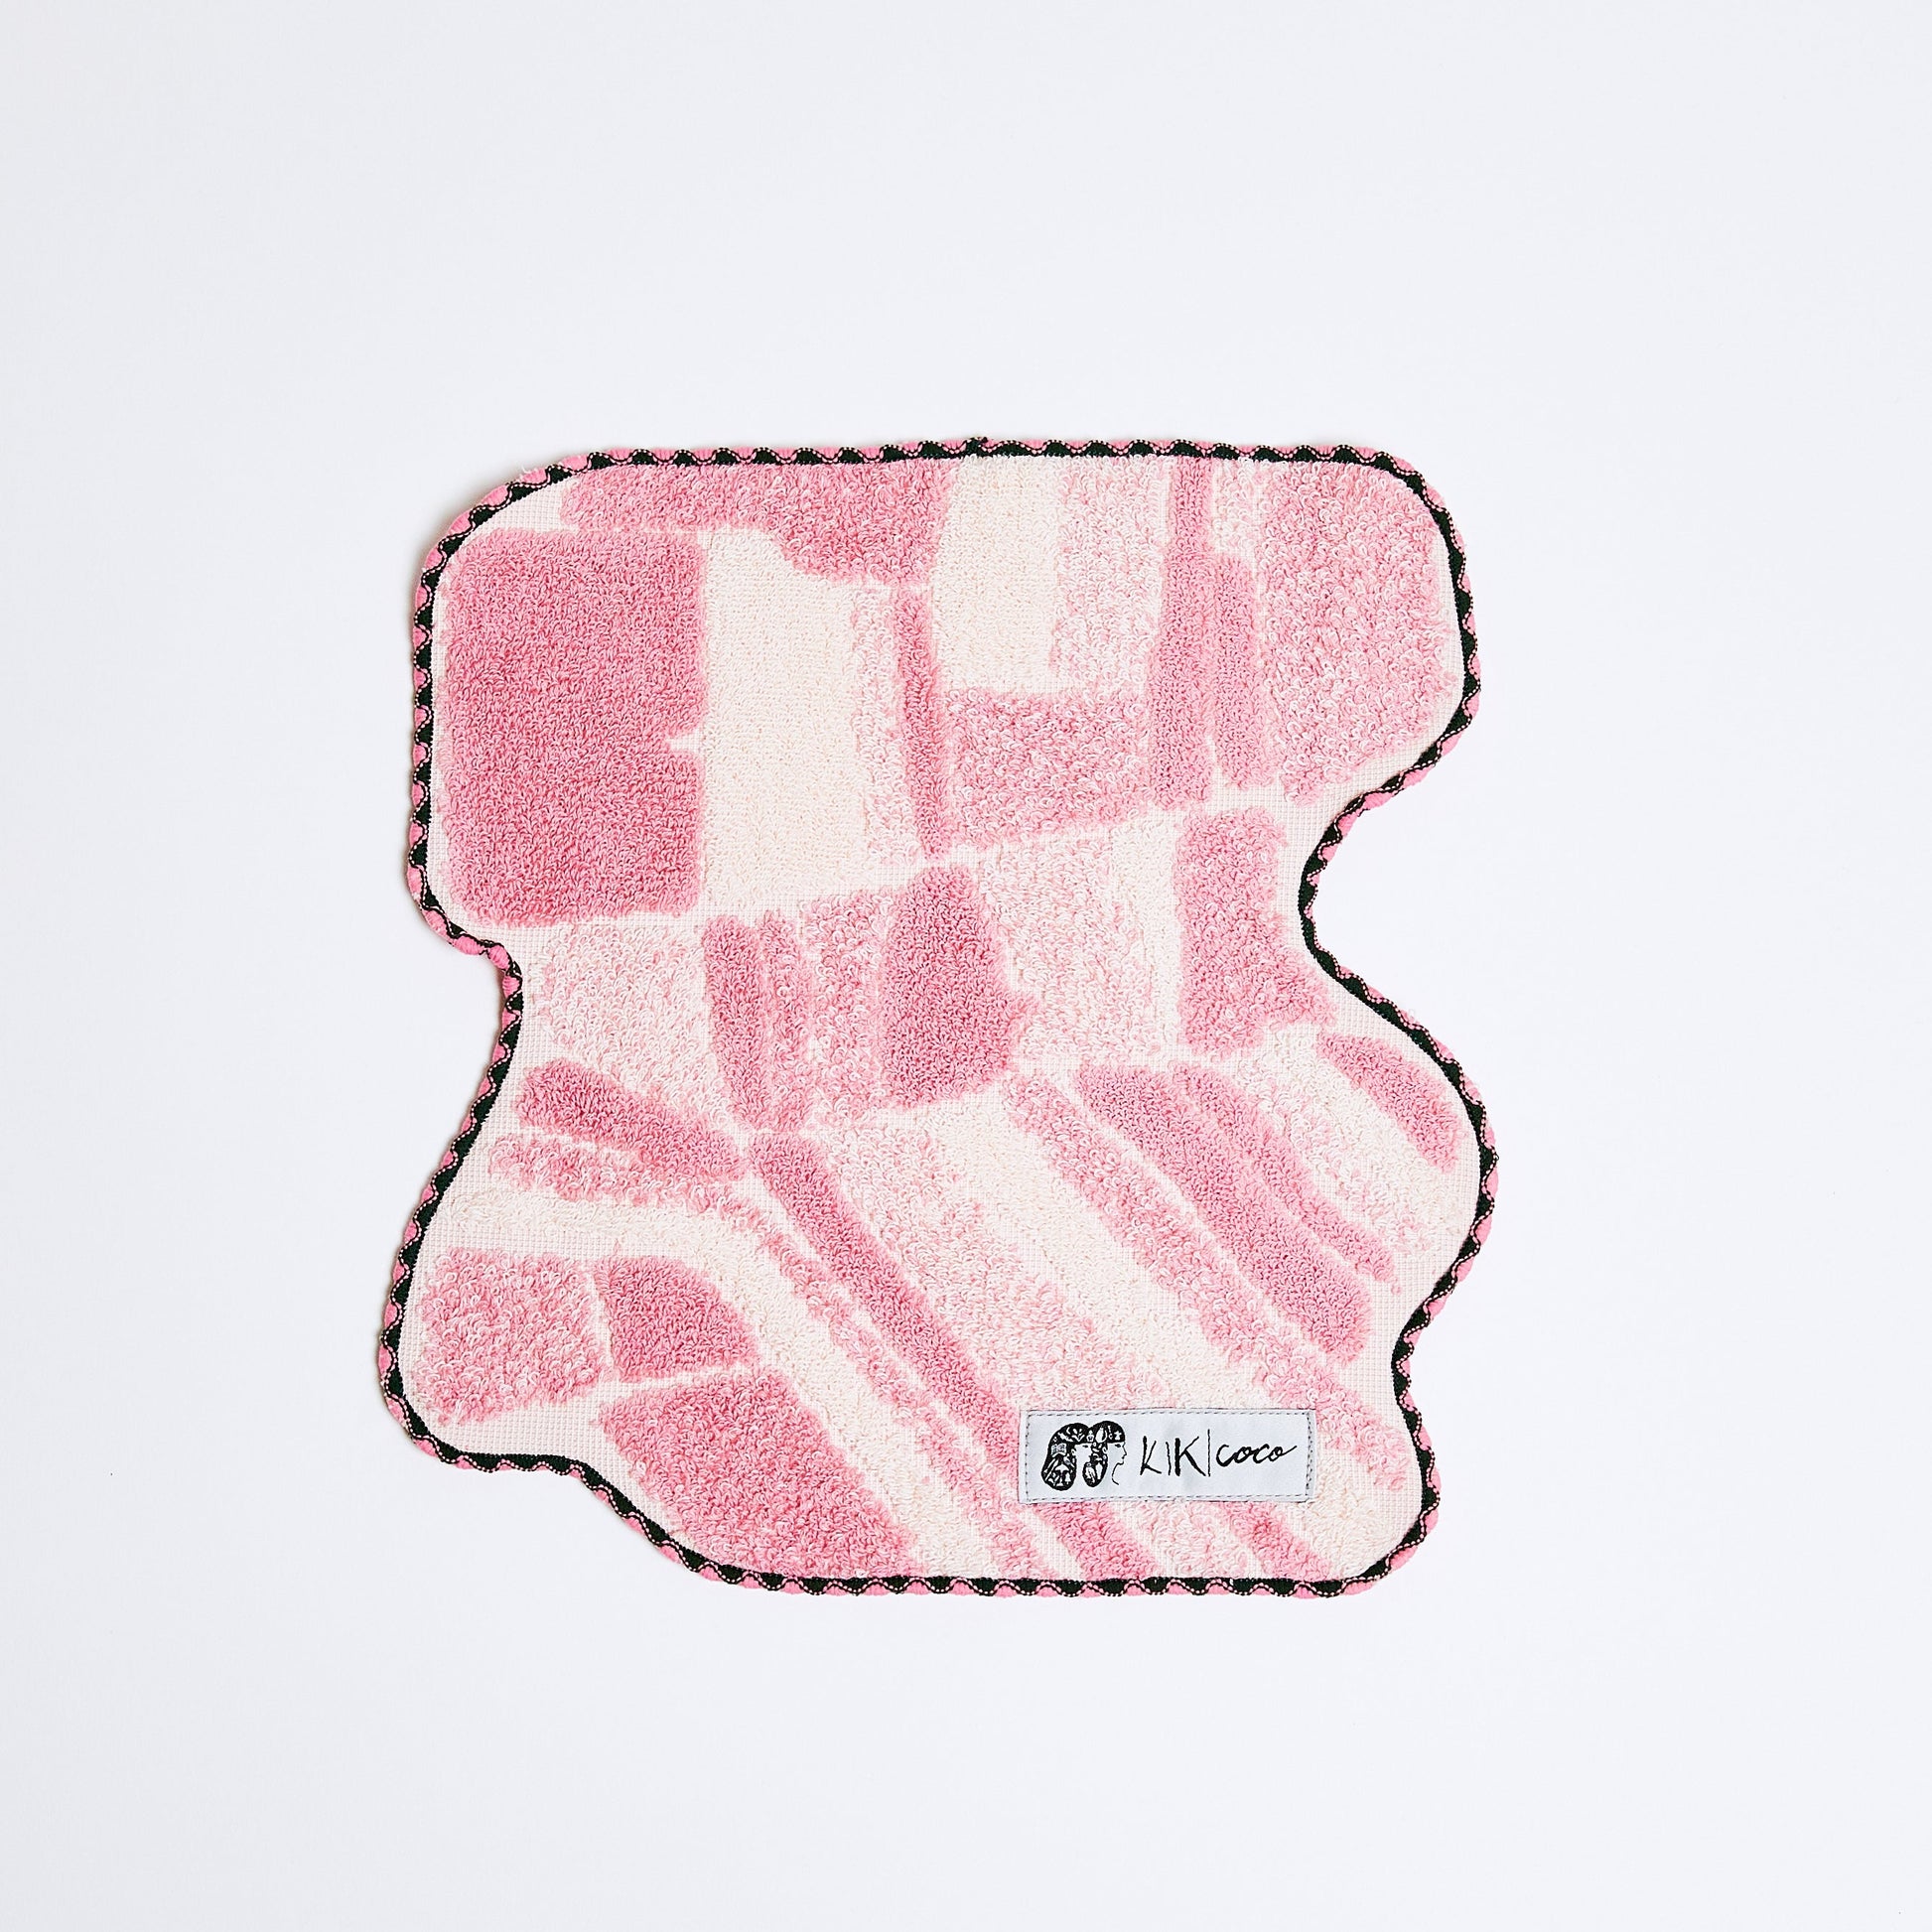 オランダのチューリップ畑をイメージしたピンク色の変形ハンカチ。